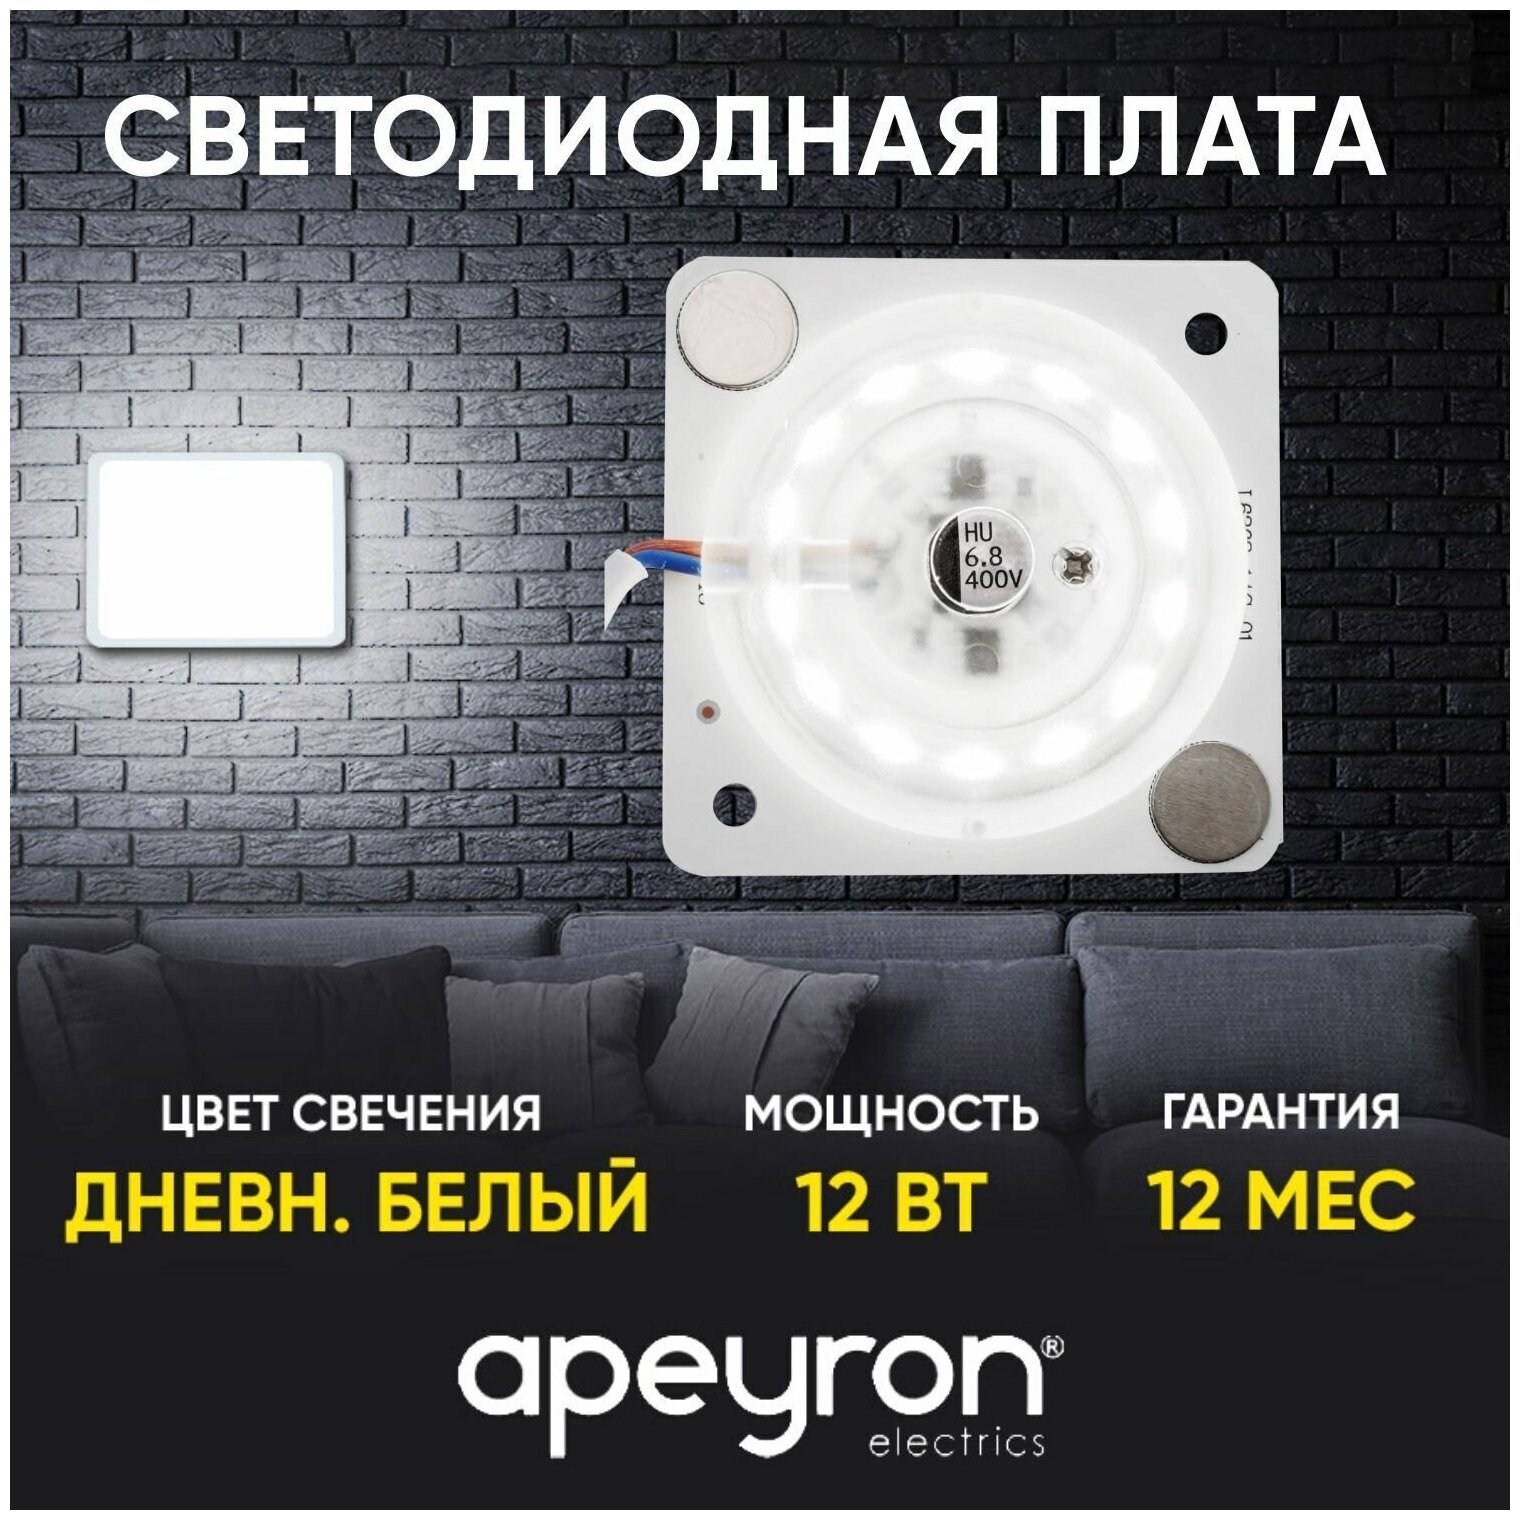 Плата Apeyron Electrics светодиодная прямоугольная с линзой, без пульсации, 220В, 12 Вт,smd 2835, IP - фотография № 1